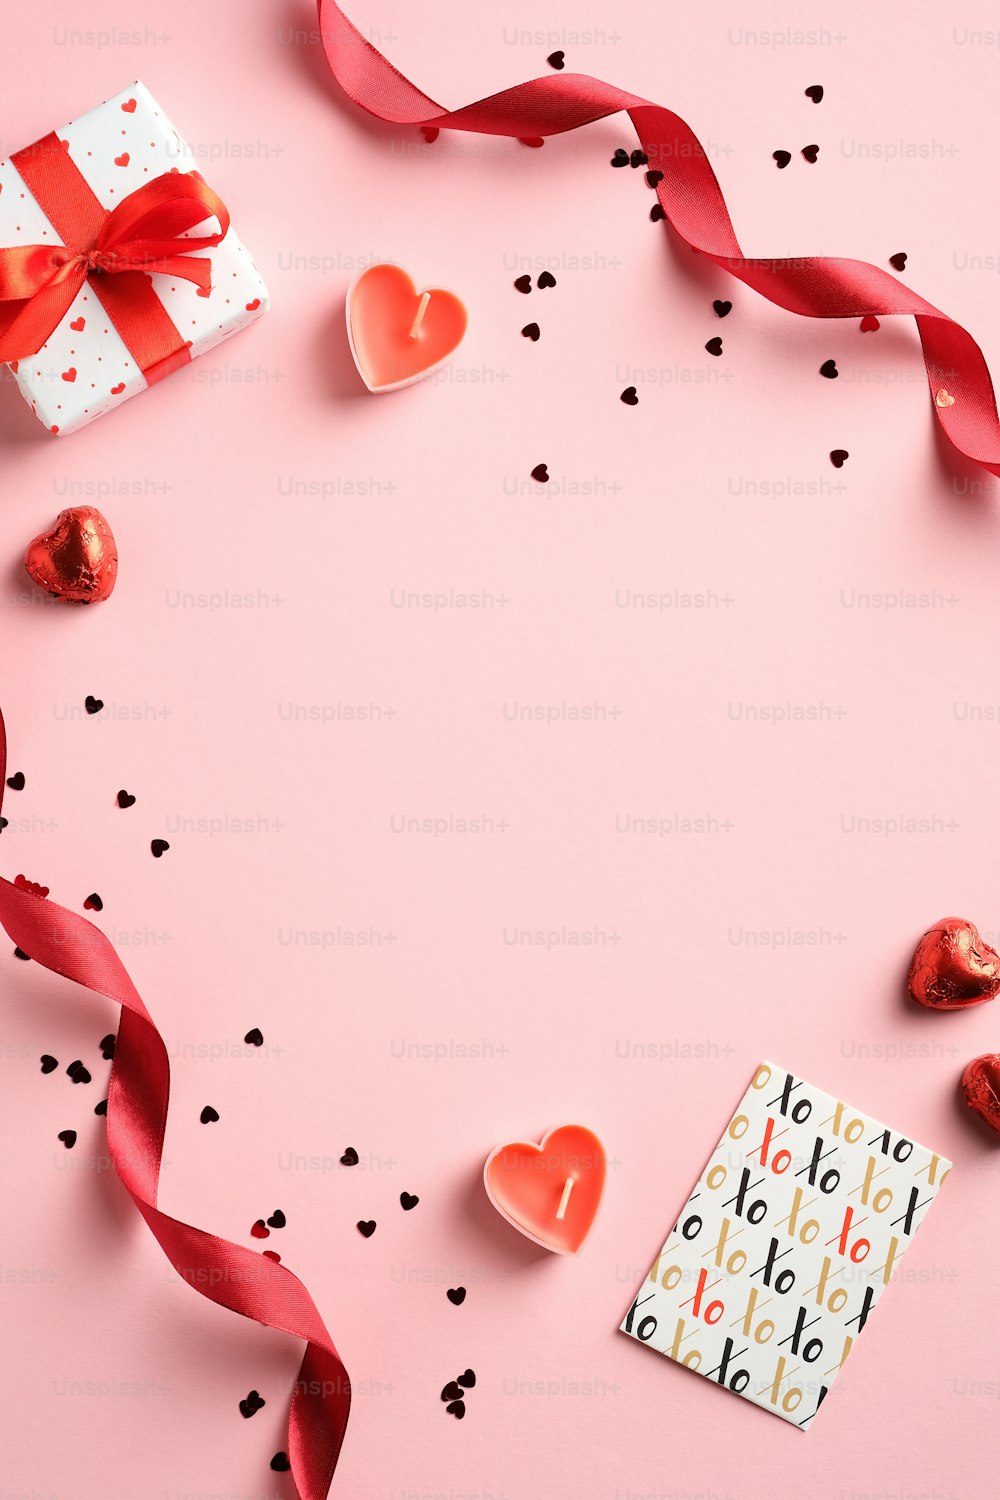 Buon concetto di San Valentino. Layout creativo con nastro rosso, confezione regalo, biglietto d'auguri, coriandoli su sfondo rosa. Vista dall'alto, posa piatta.